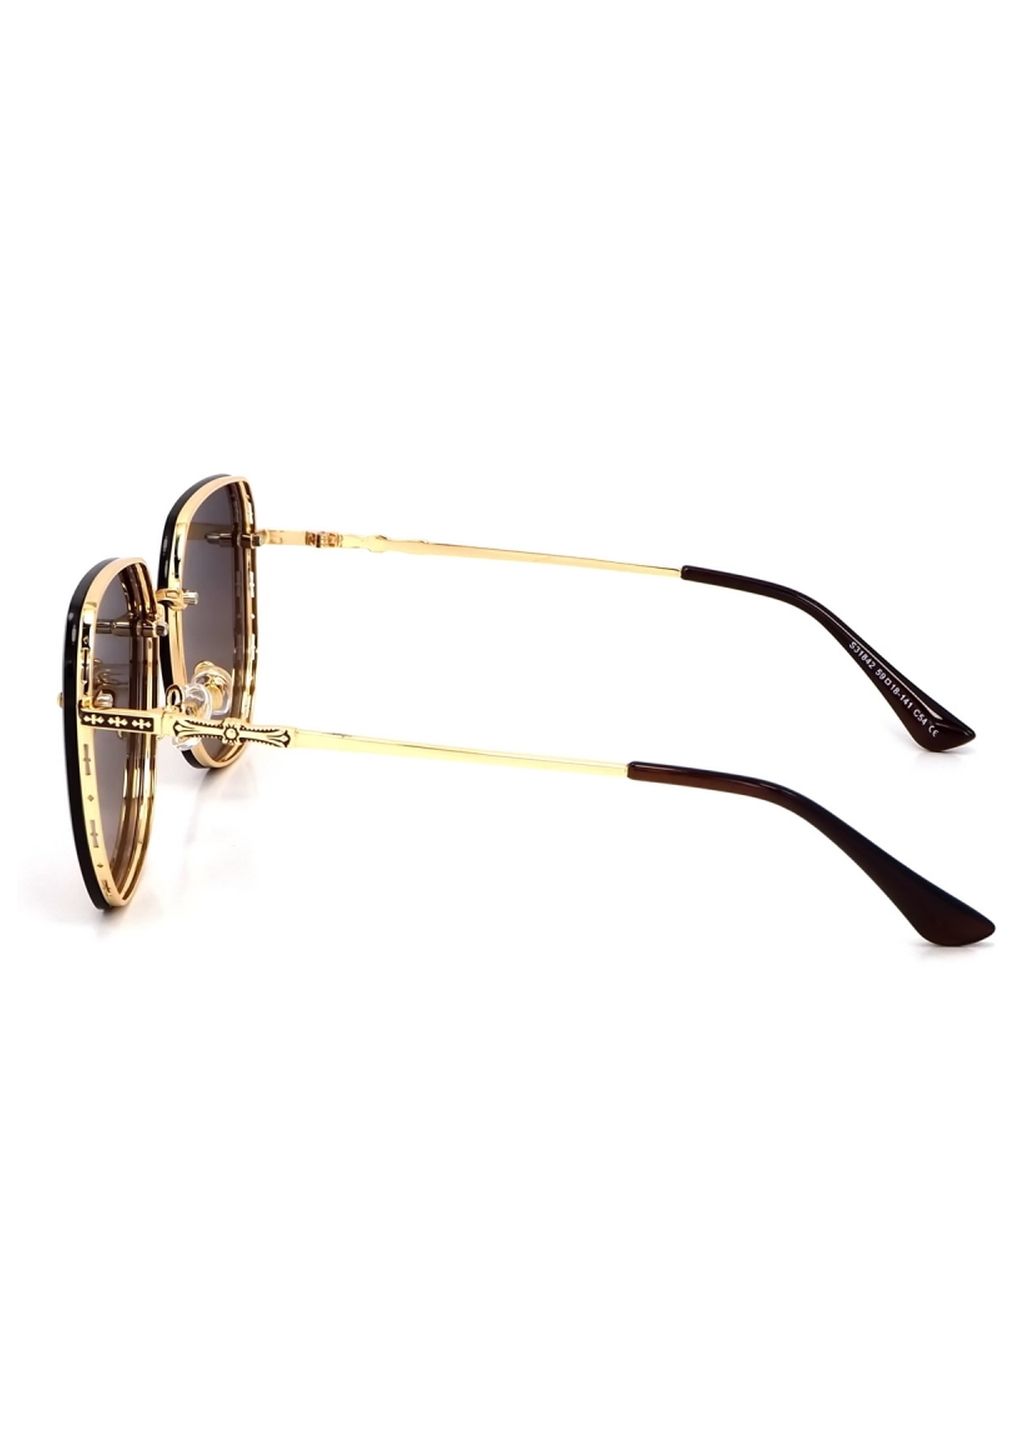 Купить Женские солнцезащитные очки Merlini с поляризацией S31842 117123 - Золотистый в интернет-магазине